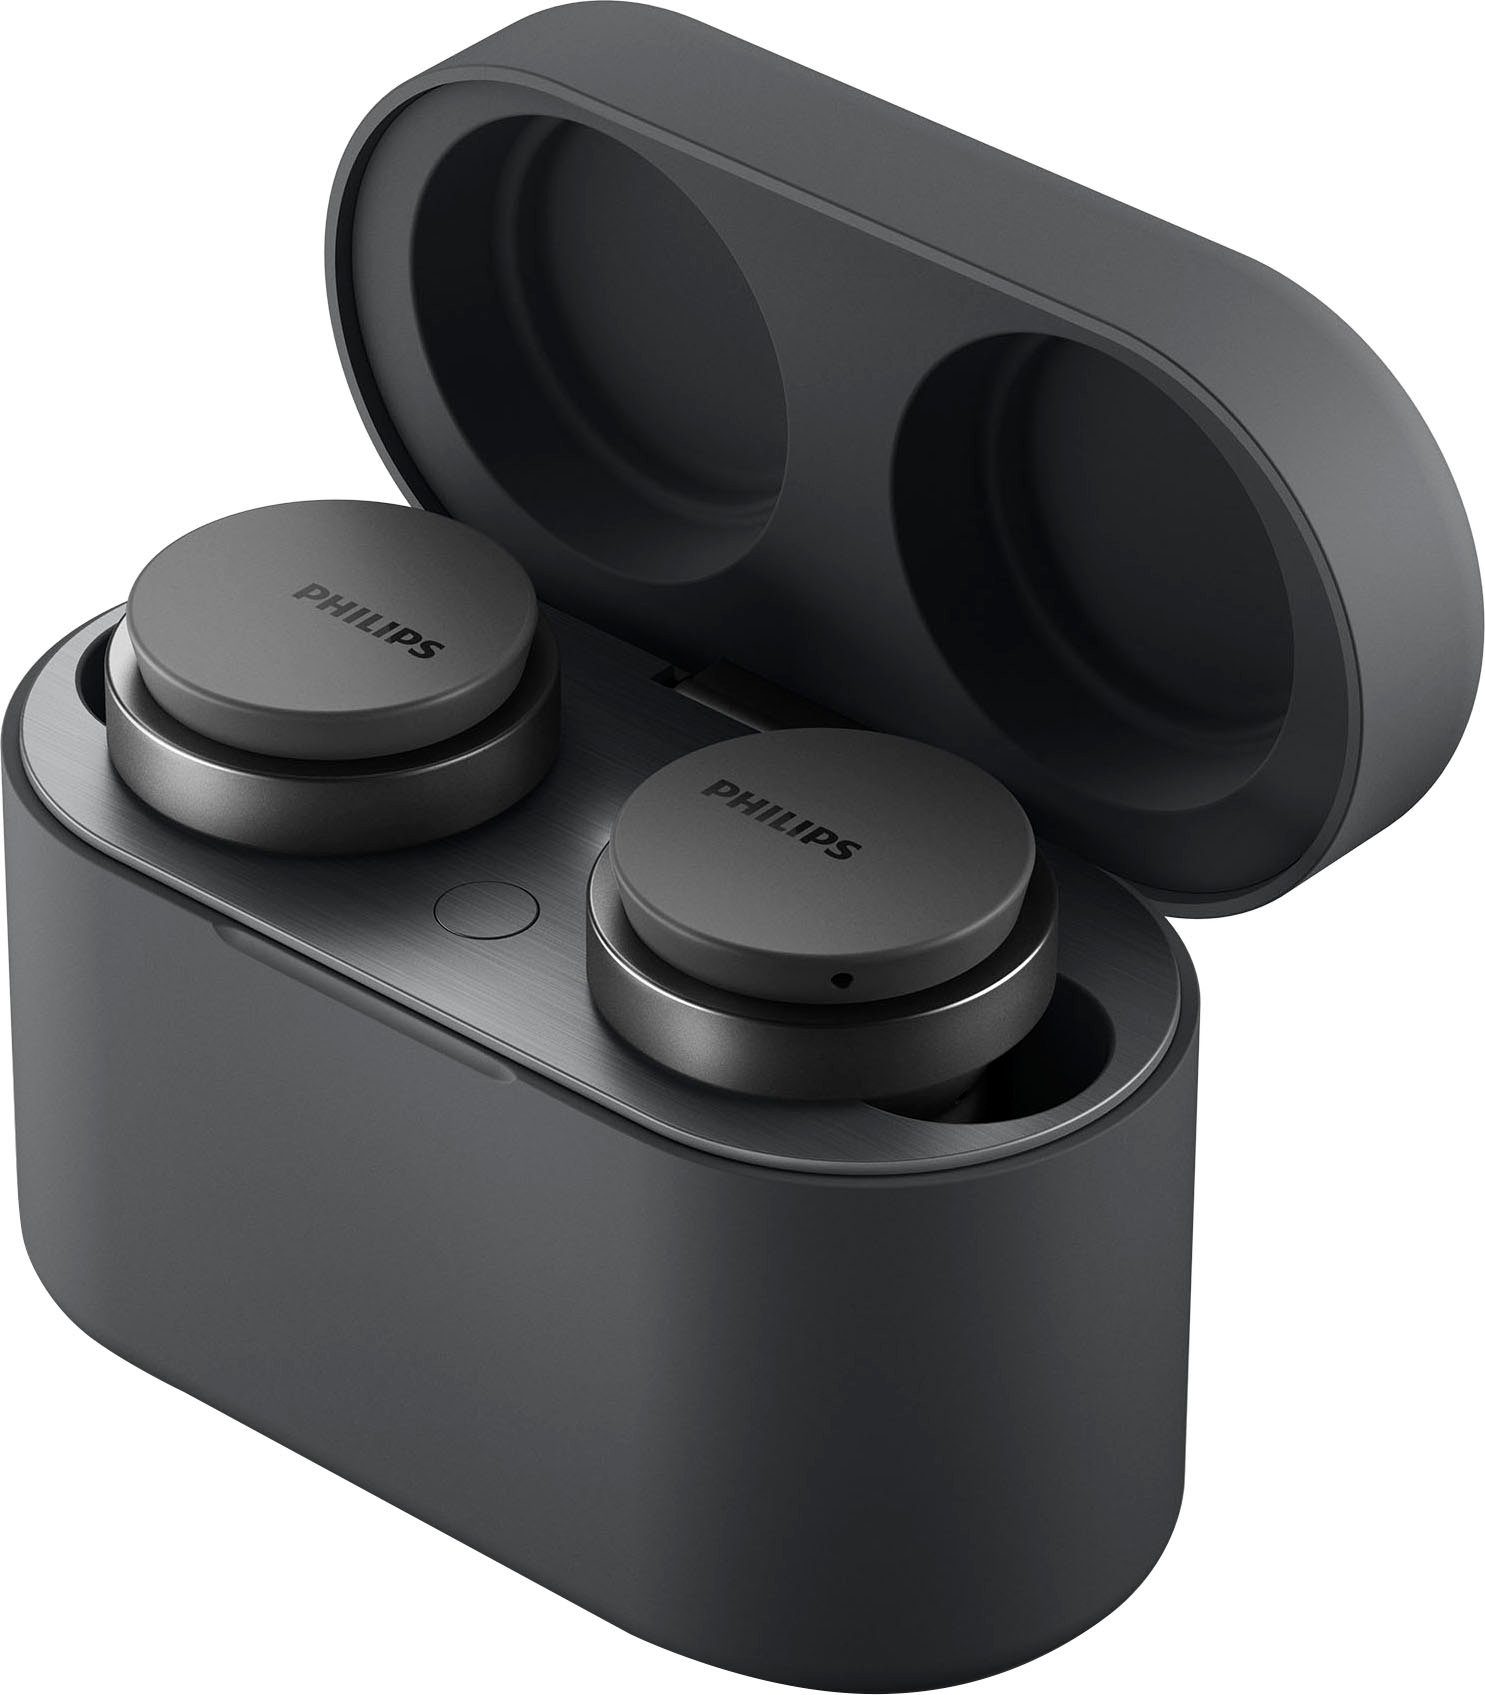 Steuerung (Noise-Cancelling A2DP Bluetooth, und AVRCP Pro, Wireless, wireless HFP) TAT8506 True integrierte Musik, Bluetooth, In-Ear-Kopfhörer Philips Anrufe schwarz für